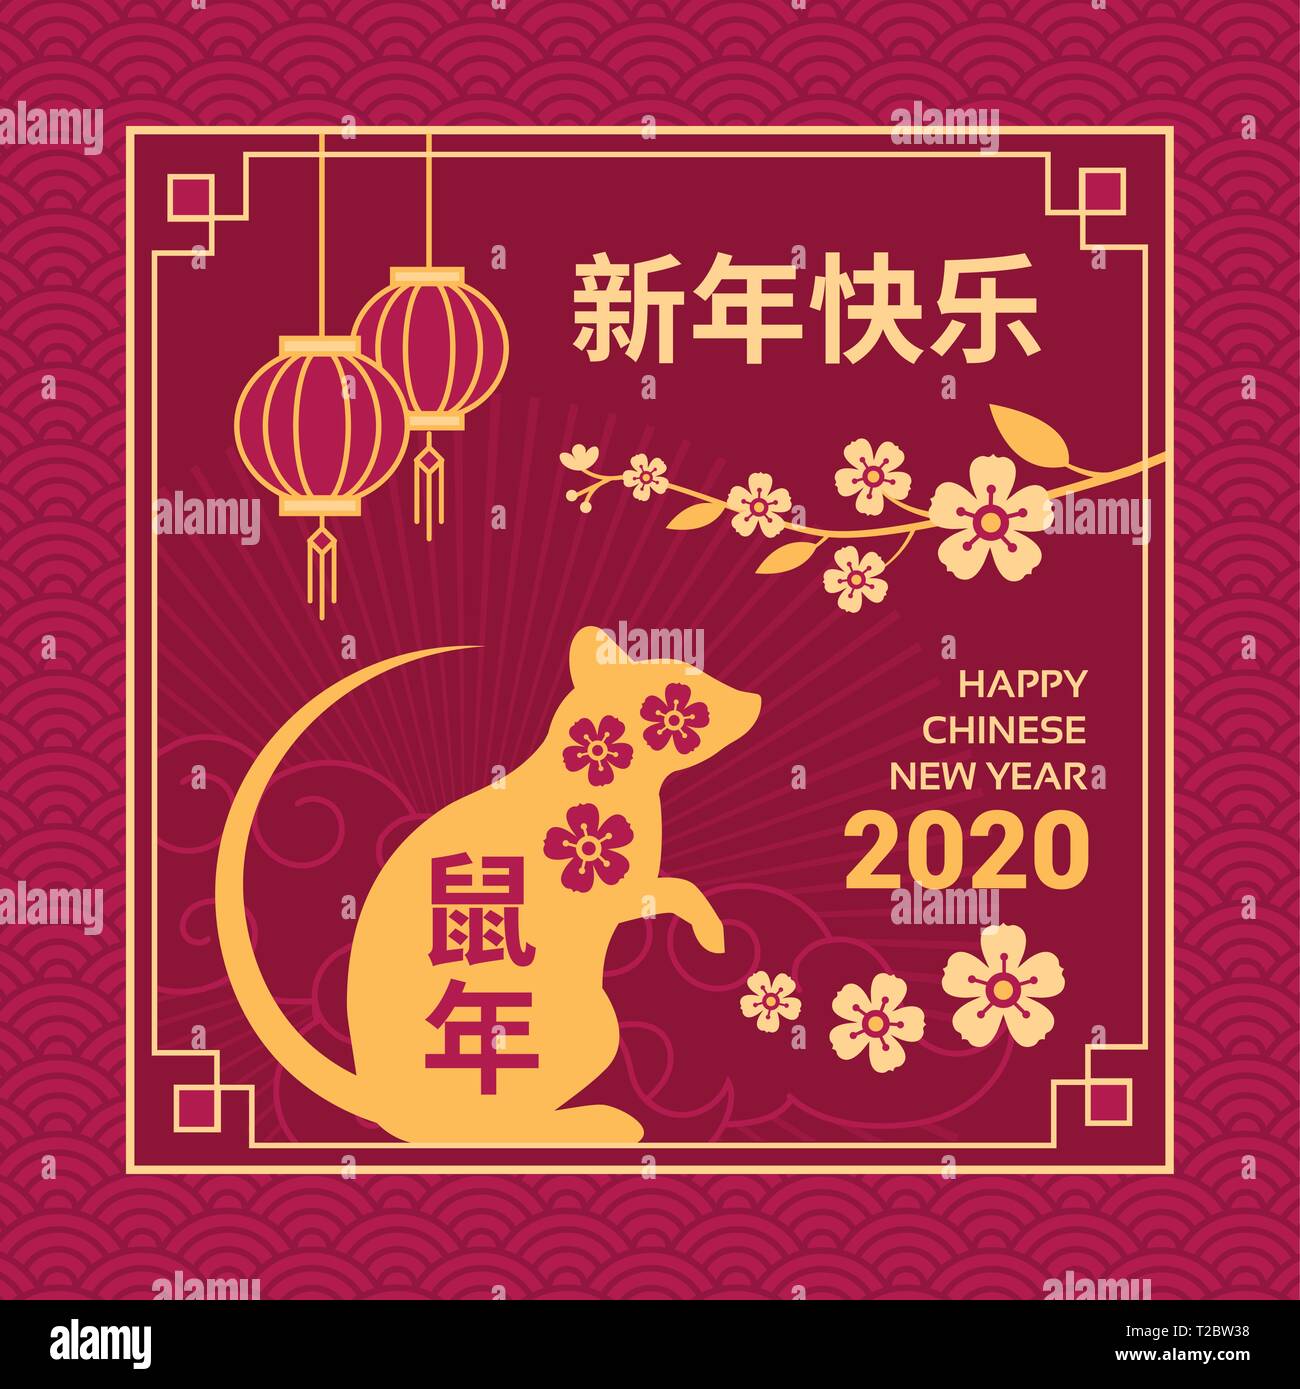 Happy Chinese New Year Karte und social media Post mit Ratte, blühen Blumen und roten Laternen Stock Vektor